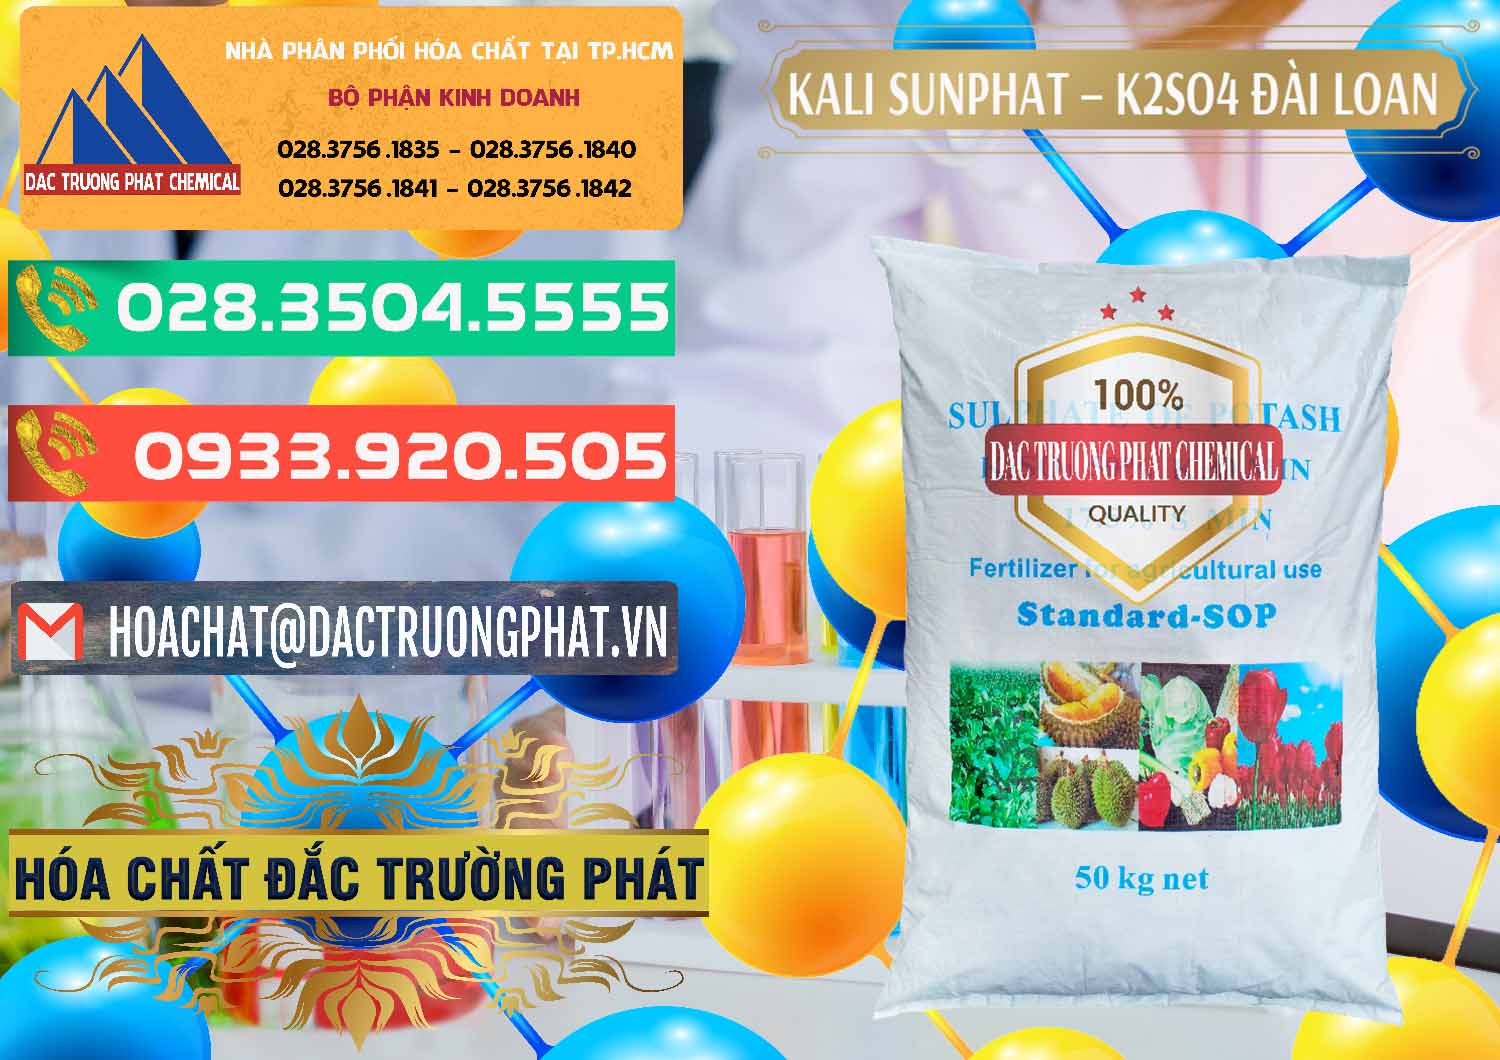 Cty nhập khẩu ( bán ) Kali Sunphat – K2SO4 Đài Loan Taiwan - 0084 - Chuyên phân phối và cung cấp hóa chất tại TP.HCM - congtyhoachat.com.vn